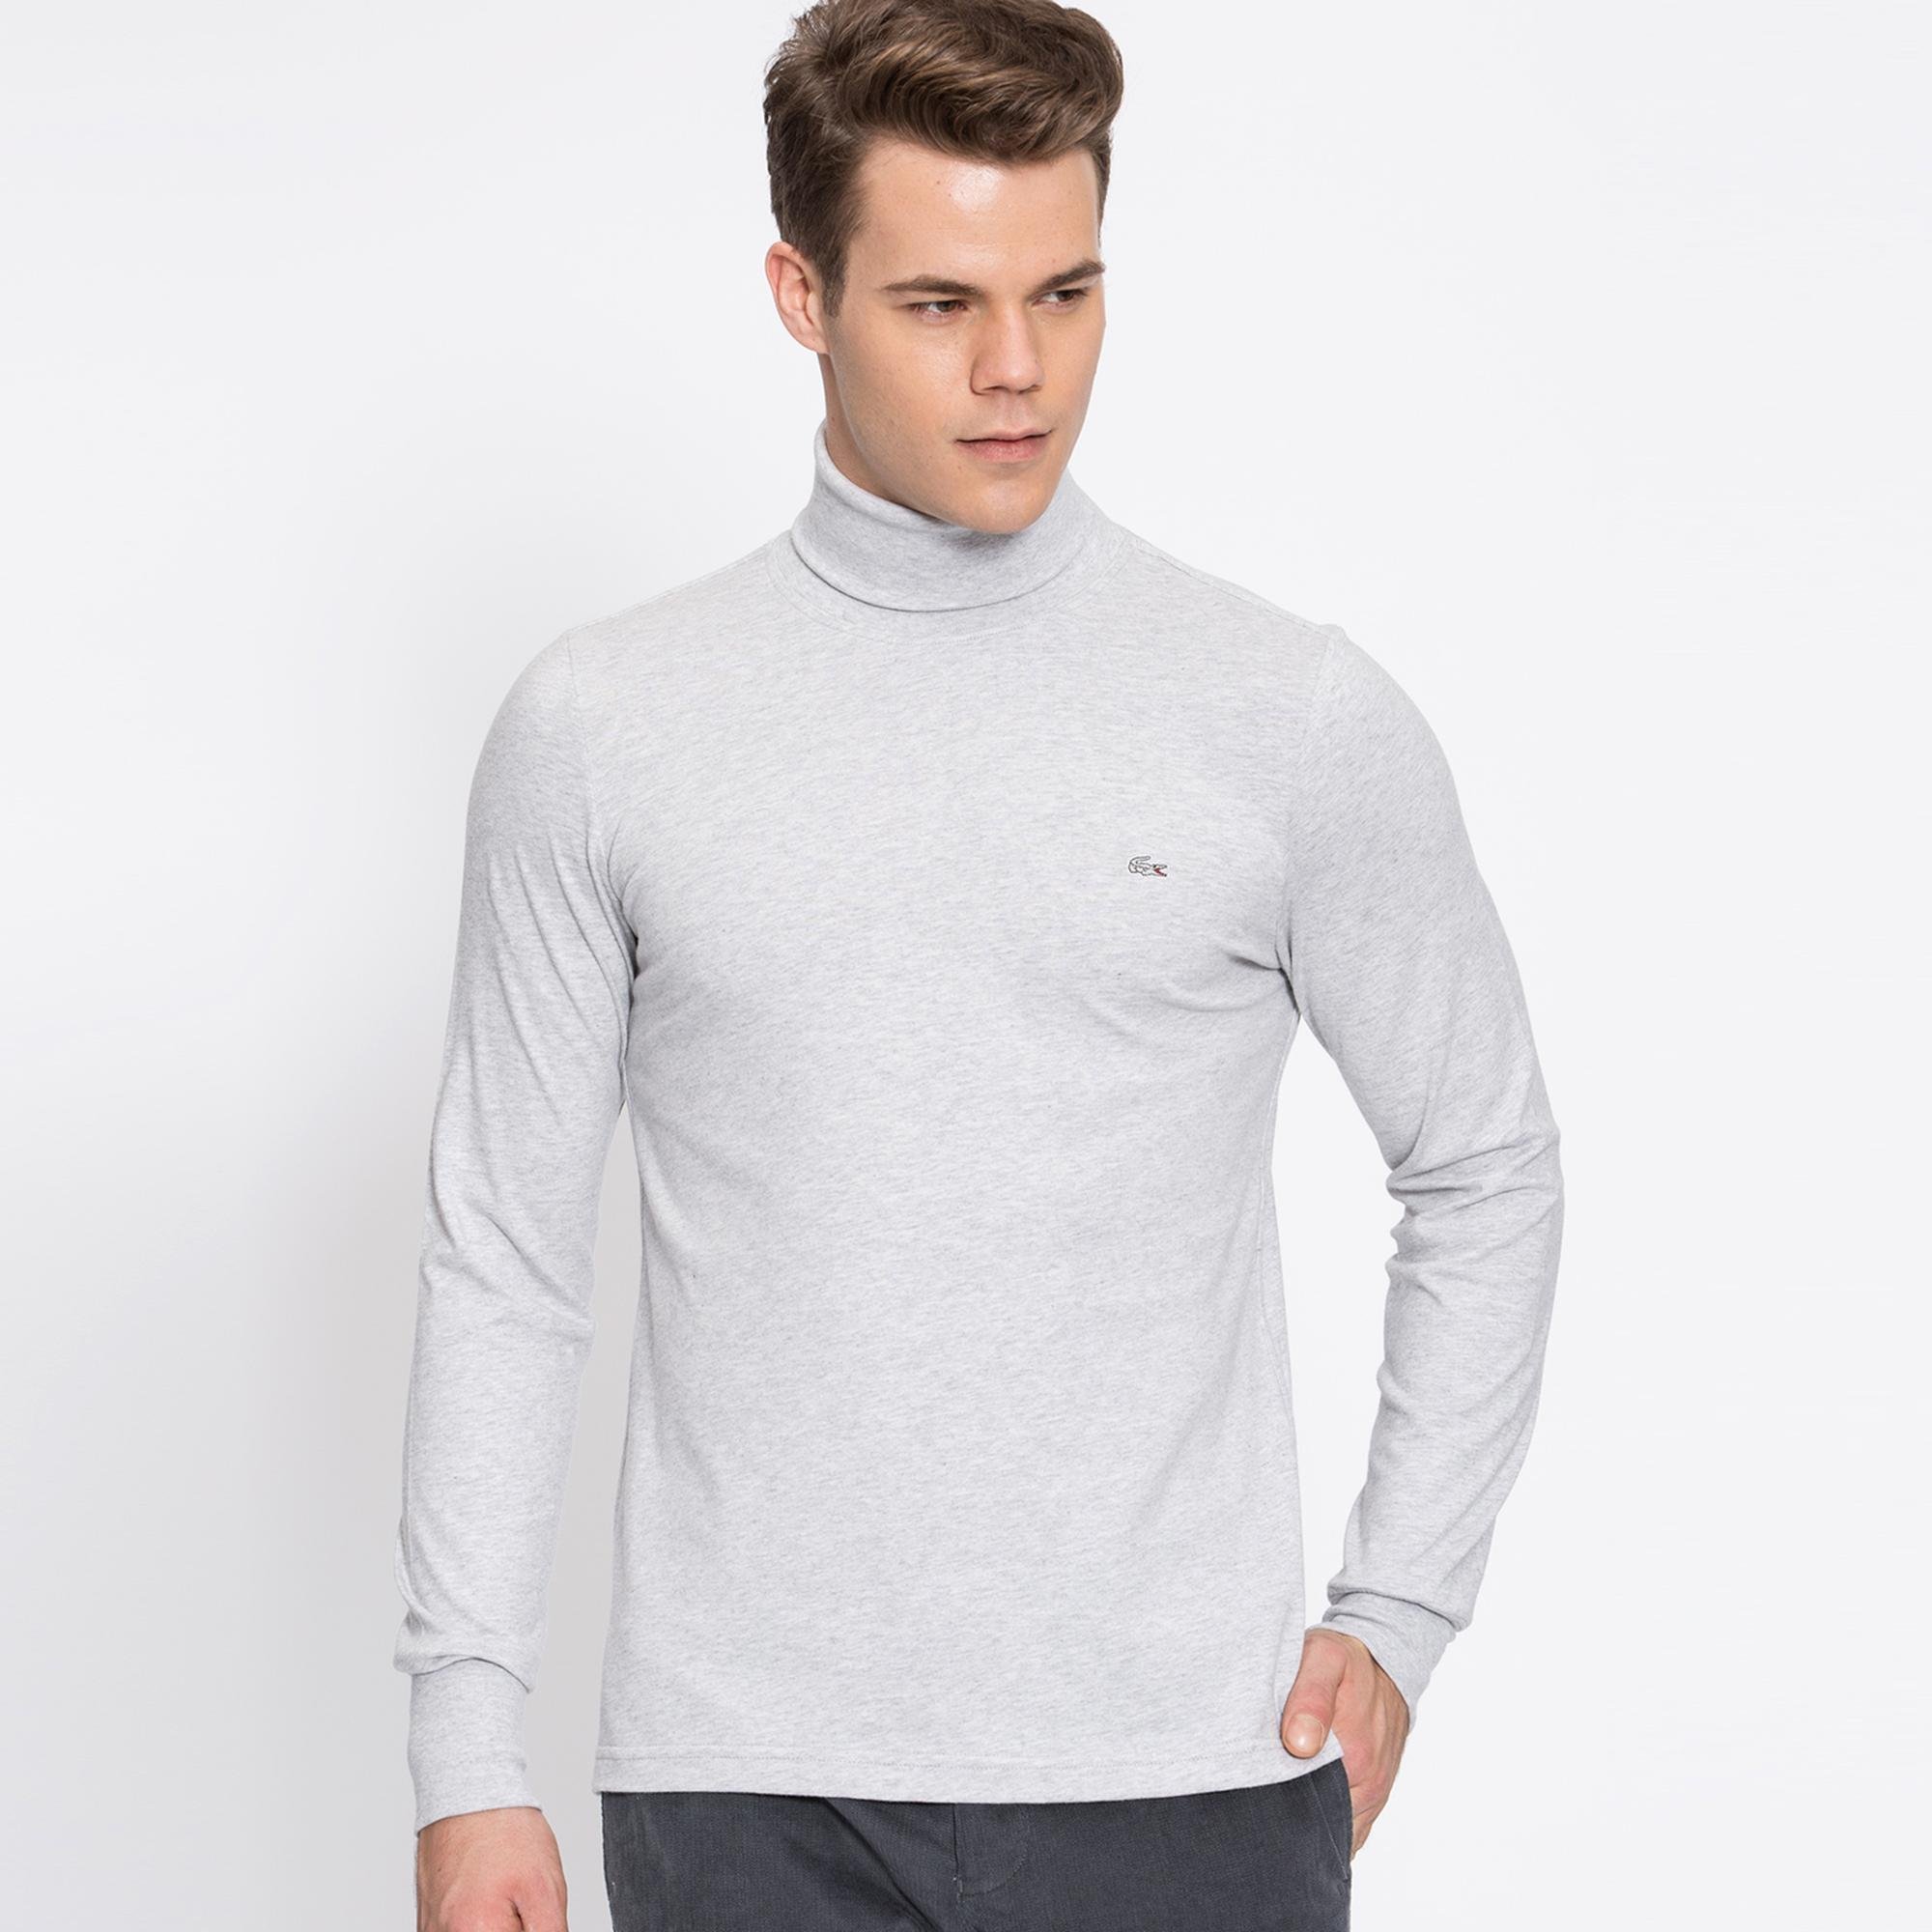 Lacoste Men's Turtleneck Cotton T-Shirt